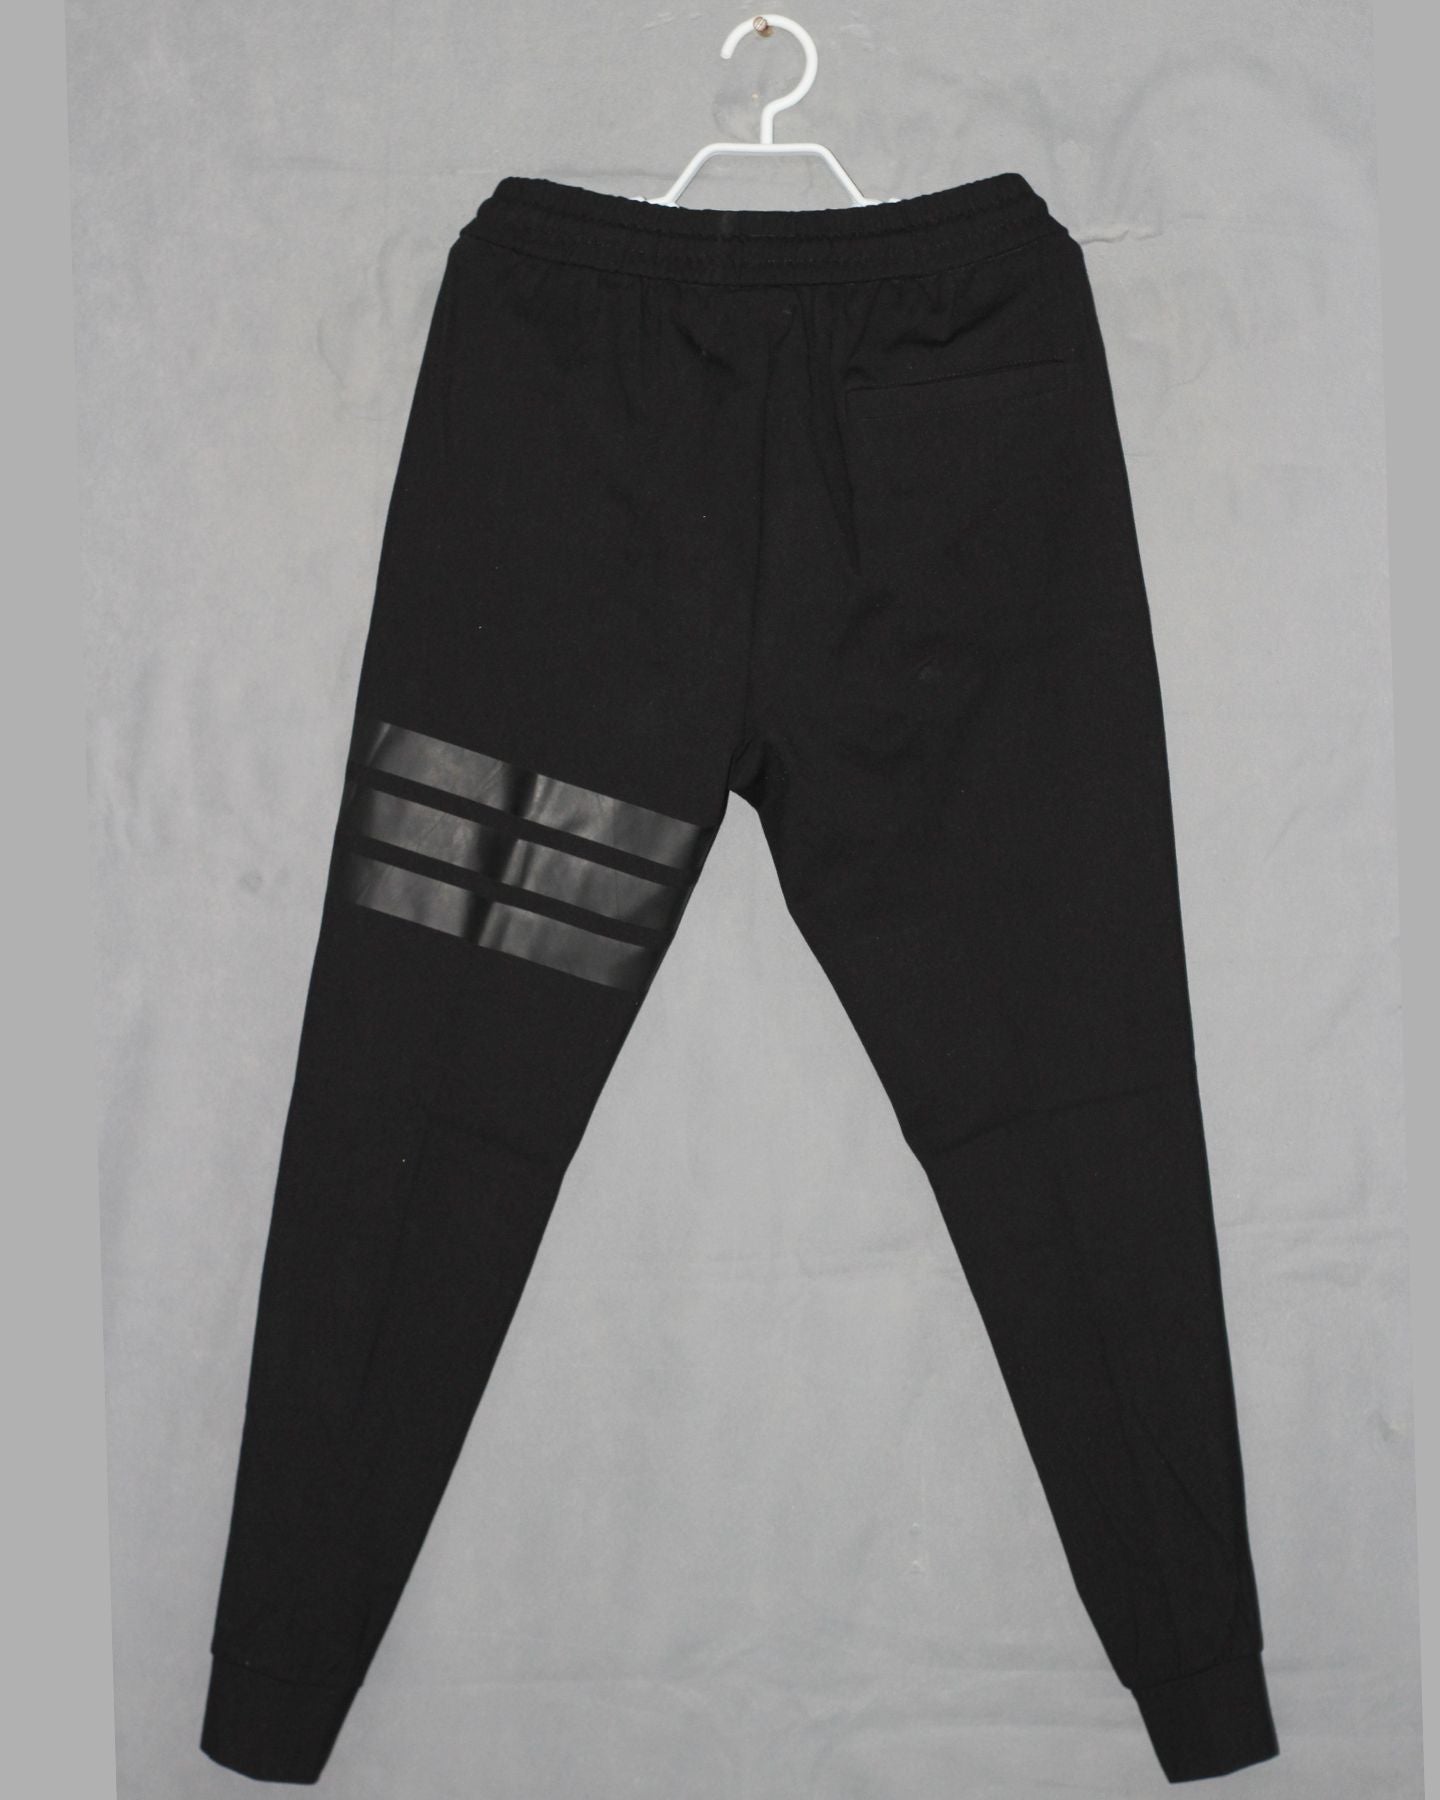 Lacoste Branded Original Sports Trouser For Men